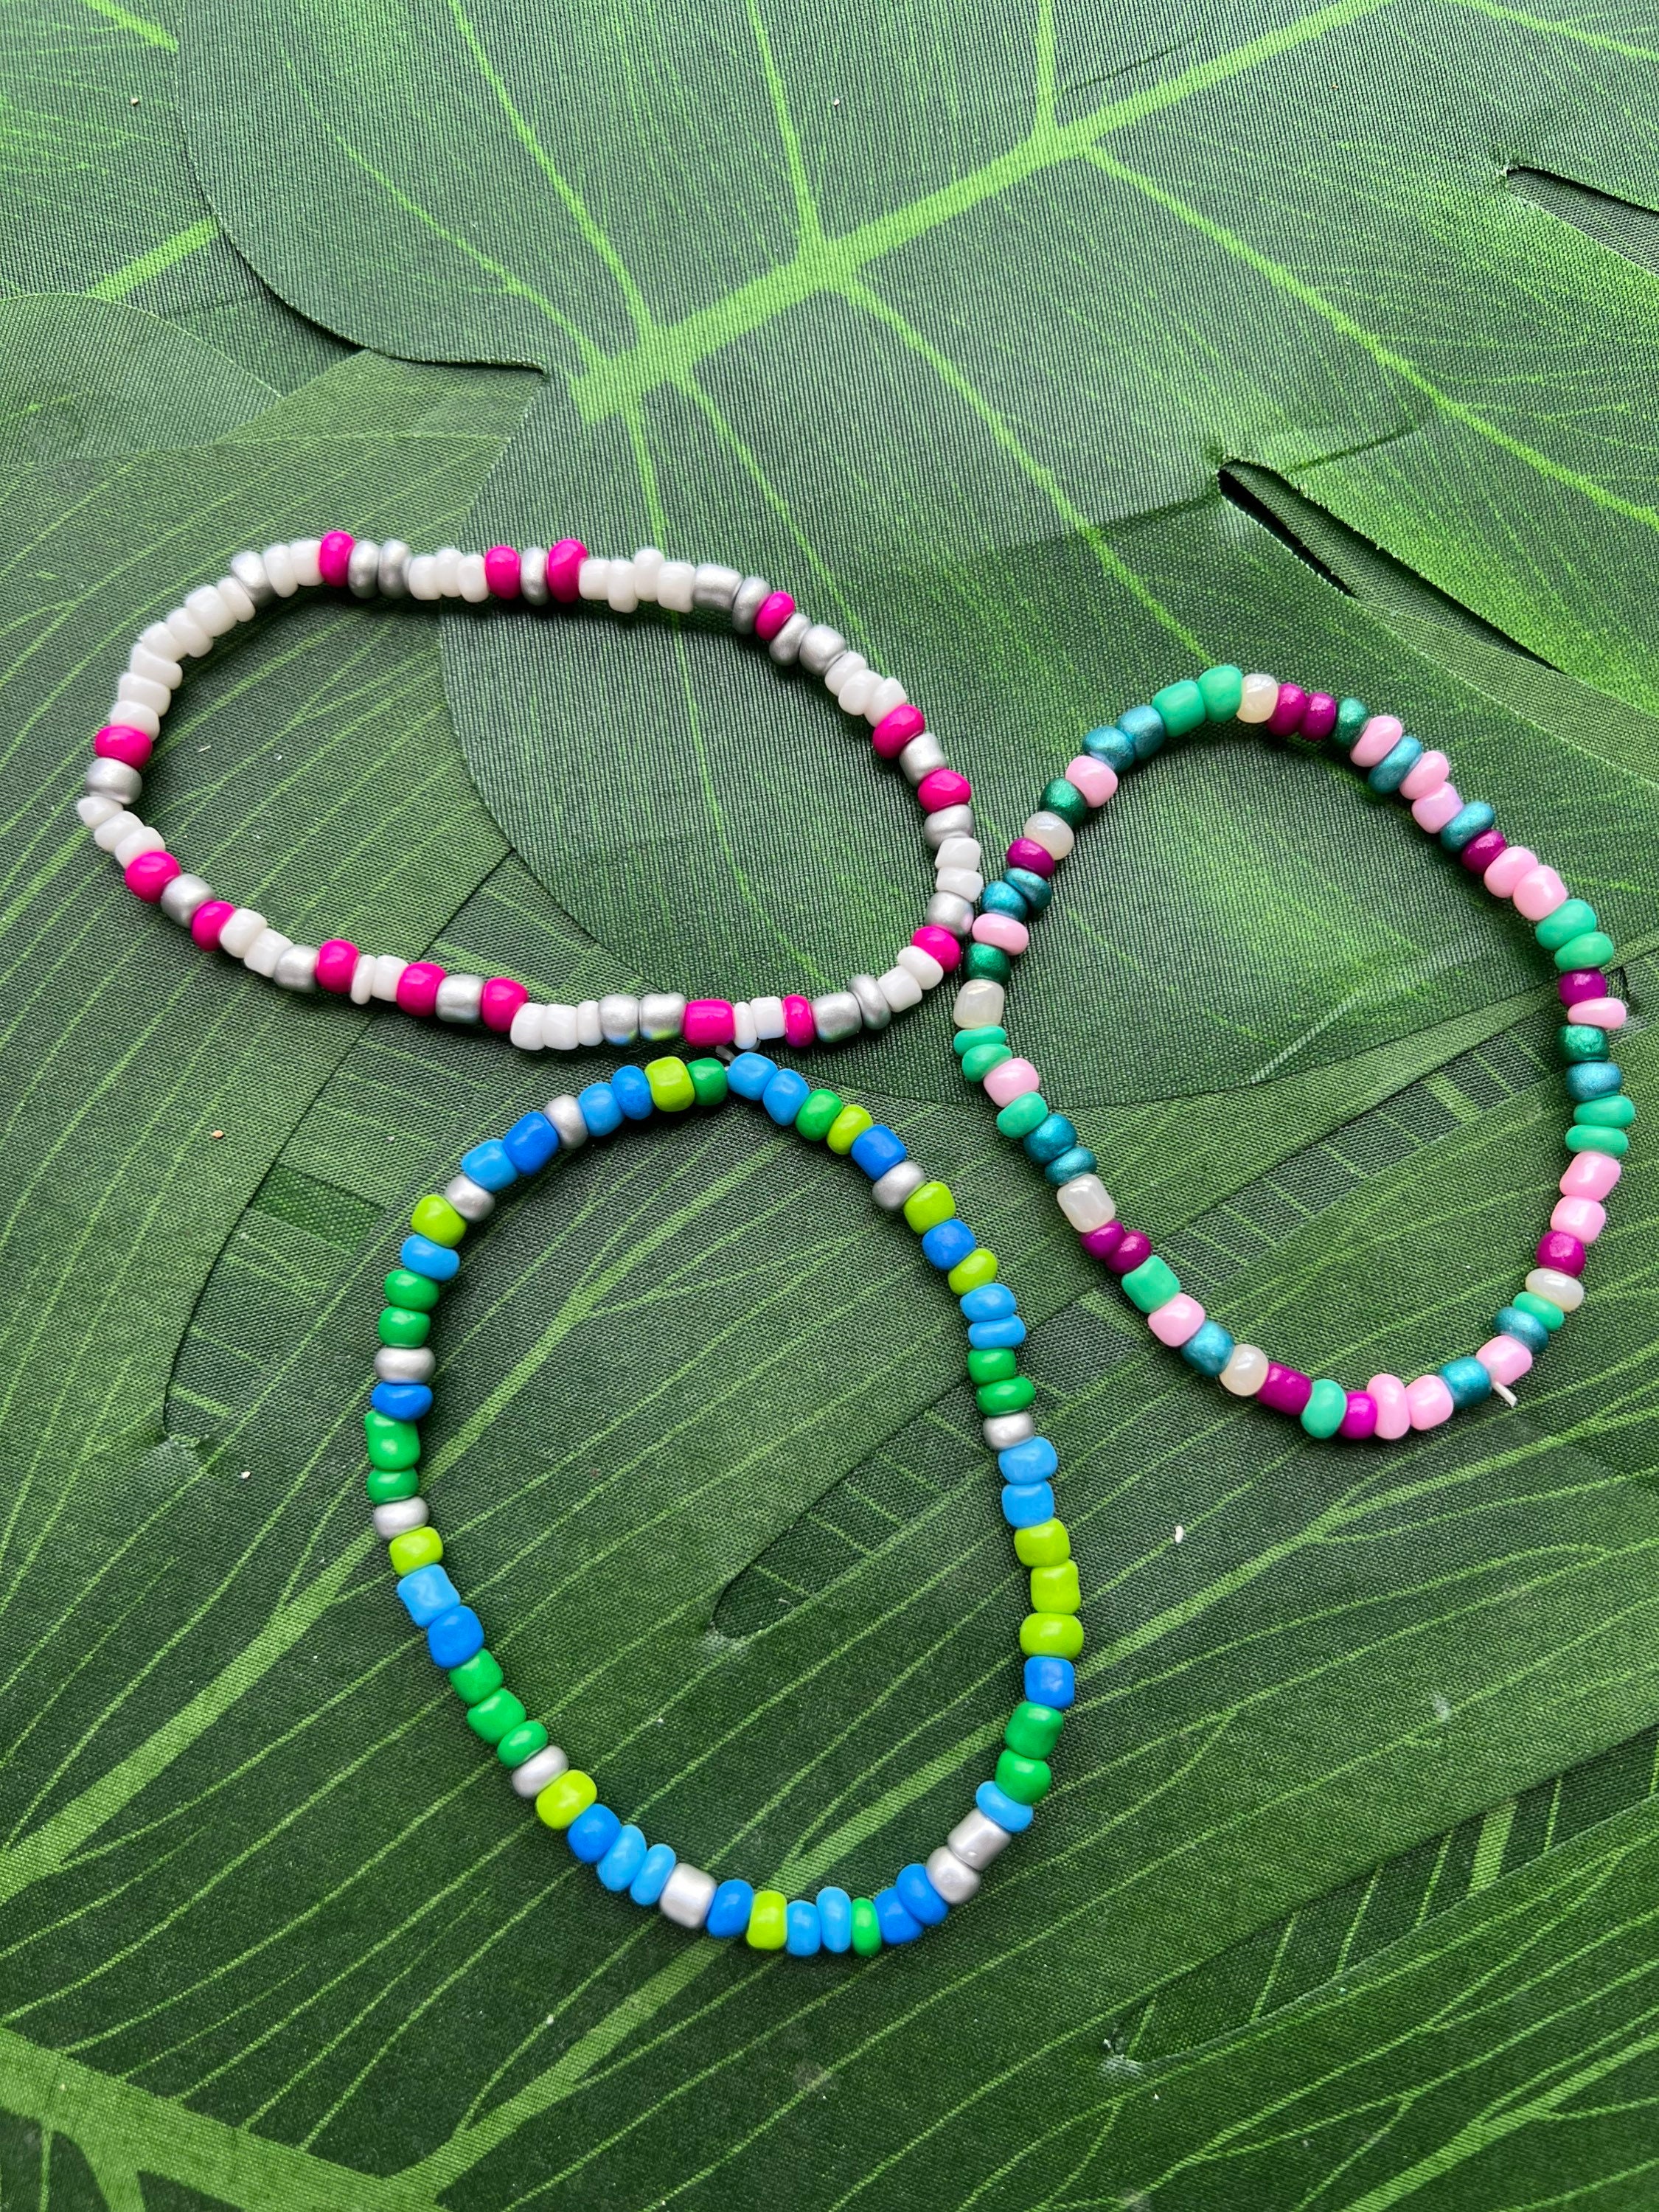 XOXO Bracelet. Purple Clay Beads. Stretch Bracelet, Stacking Bracelet,  Beach Jewelry. 